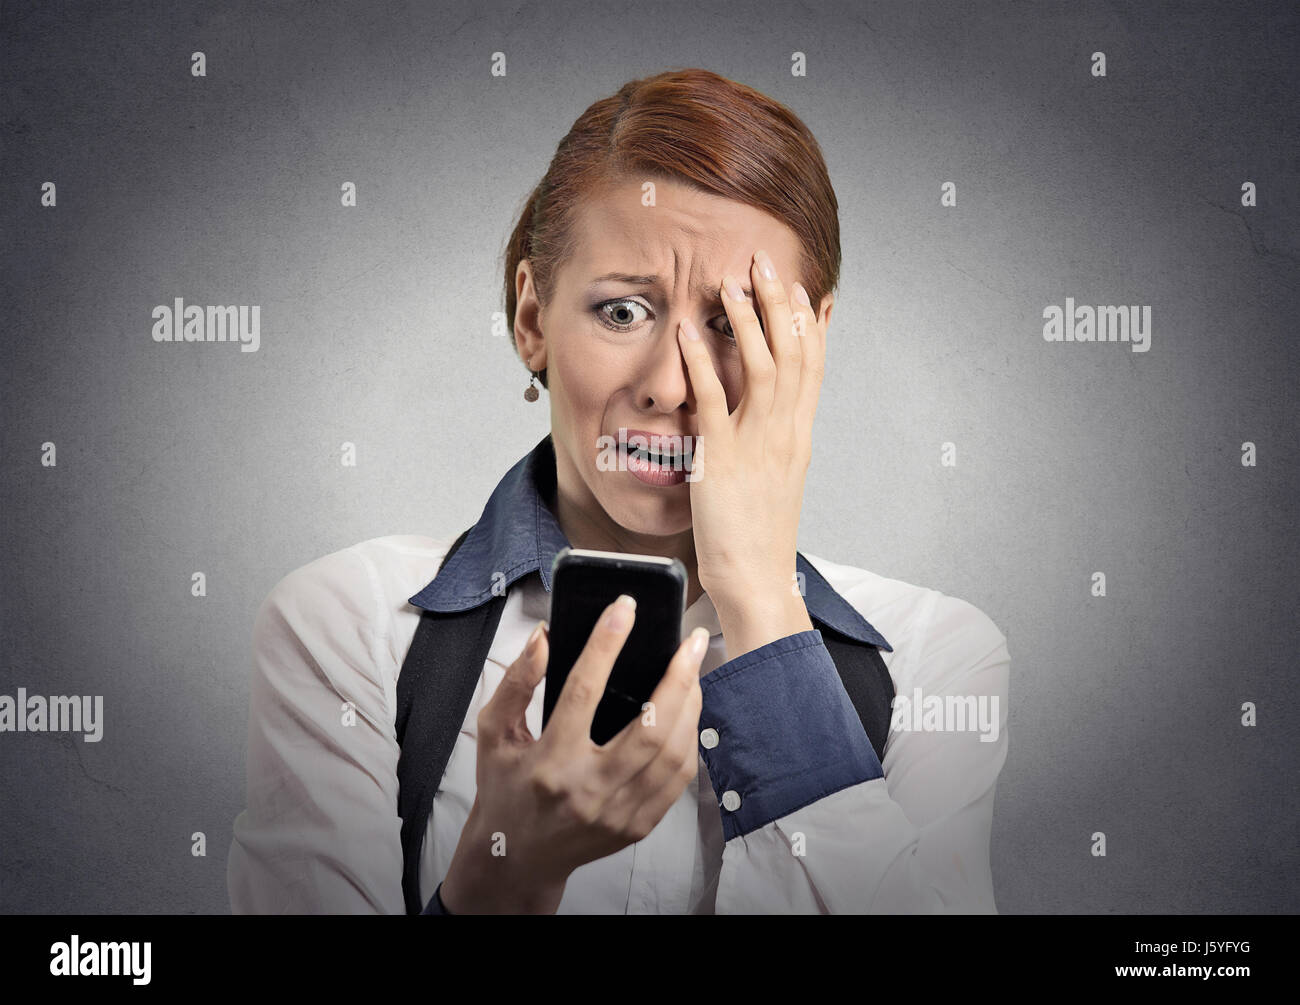 Verärgert gestresst Frau mit Handy angewidert schockiert mit der Nachricht, dass sie isolierten grauen Hintergrund erhalten. Lustig aussehende menschliches Gesicht Ausdruck emoti Stockfoto